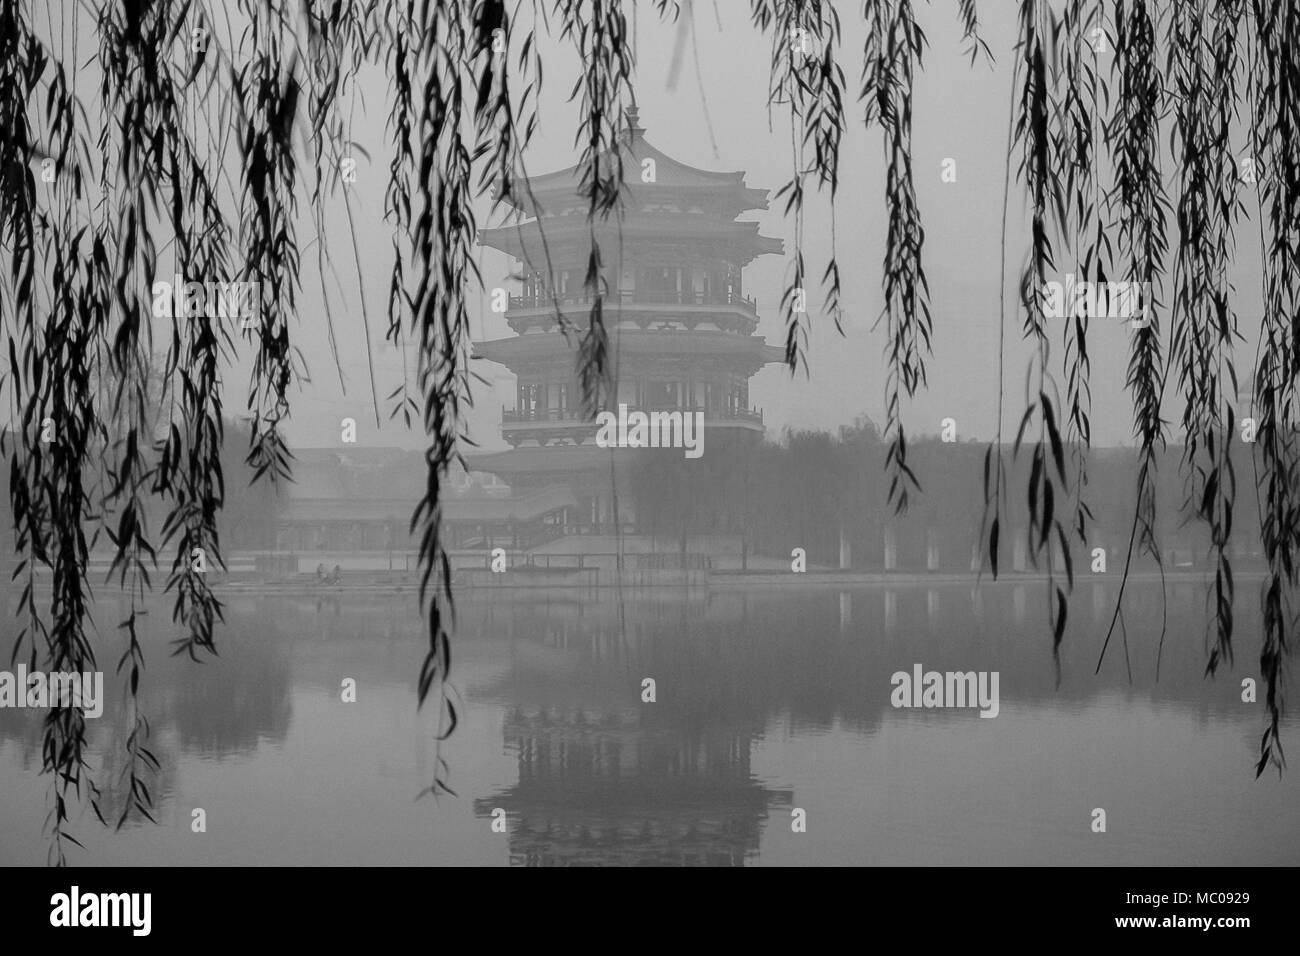 Chinesische Pagode Zentriert Und Gerahmt Von Trauerweide Am Rande Eines Sees Schwarz Weiss Bild Eines Smoggy Grau November Xi An China Stockfotografie Alamy